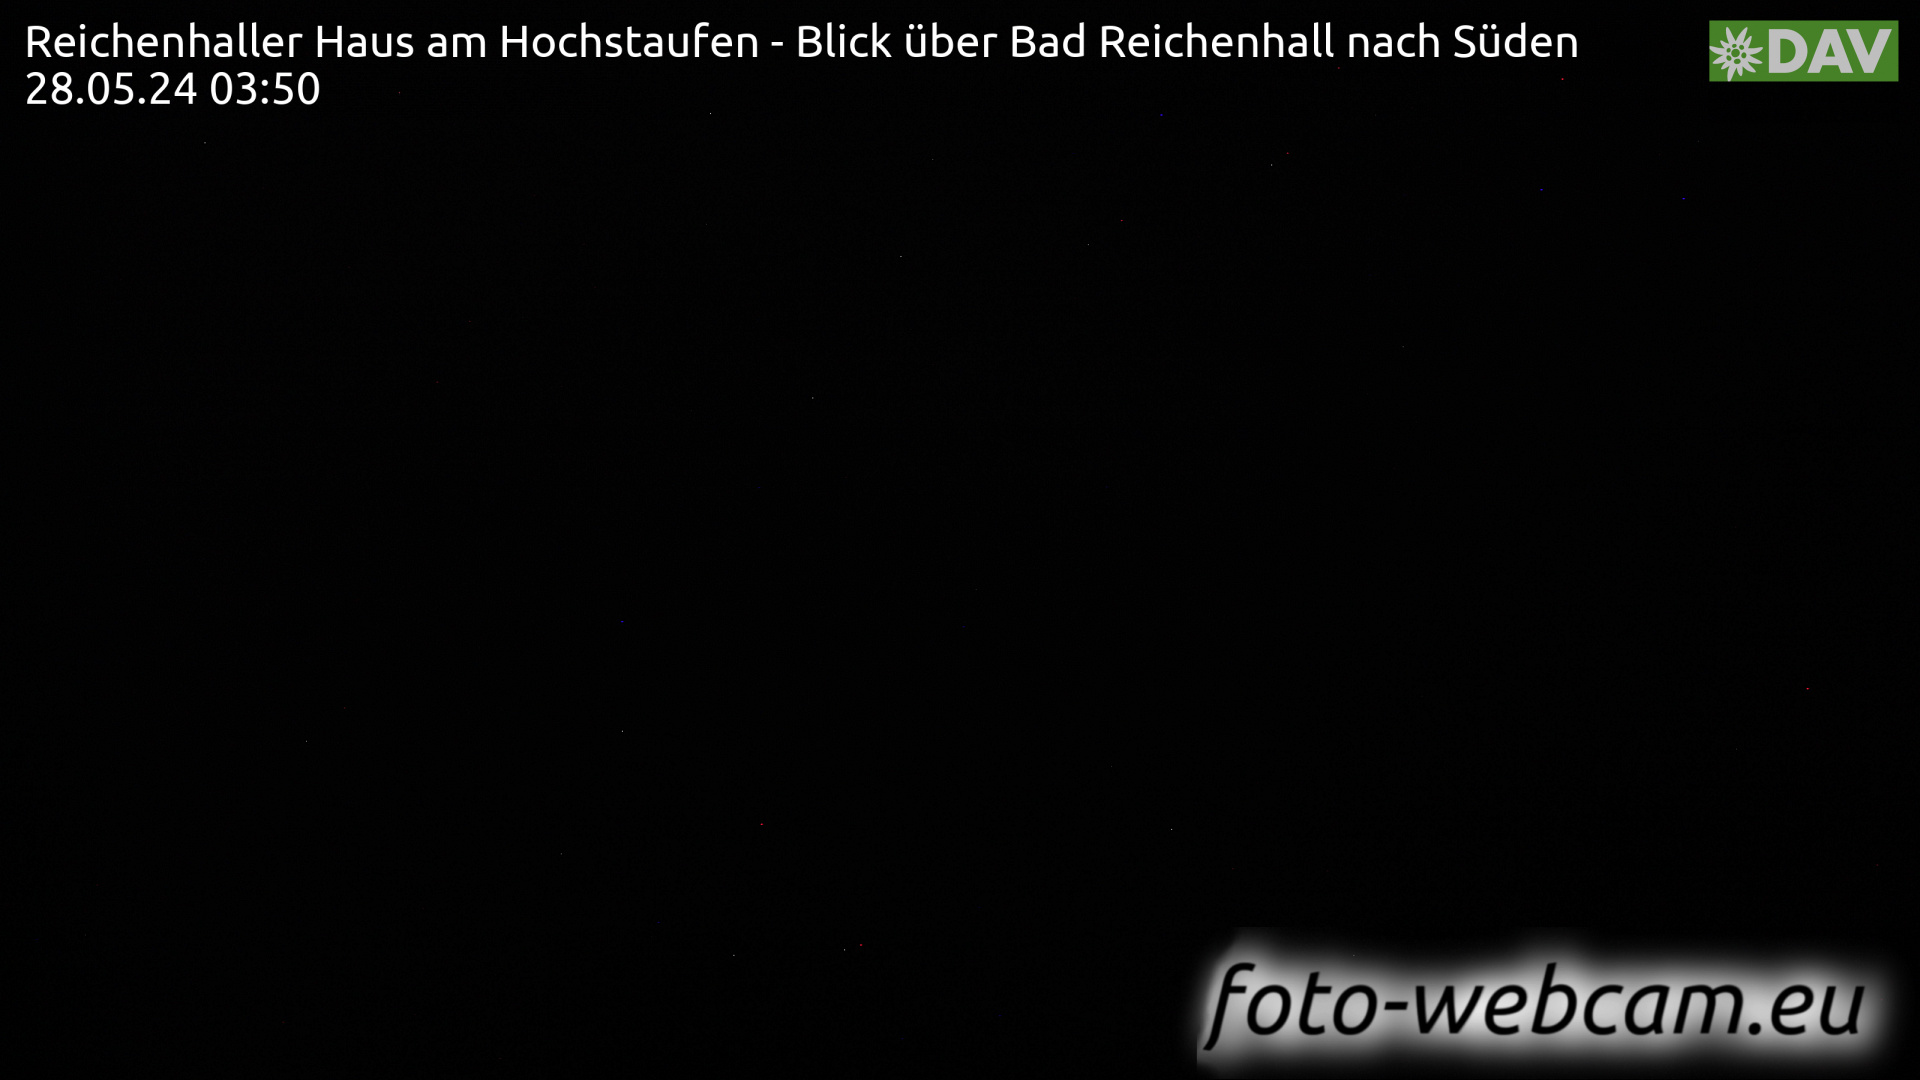 Bad Reichenhall Wed. 03:55